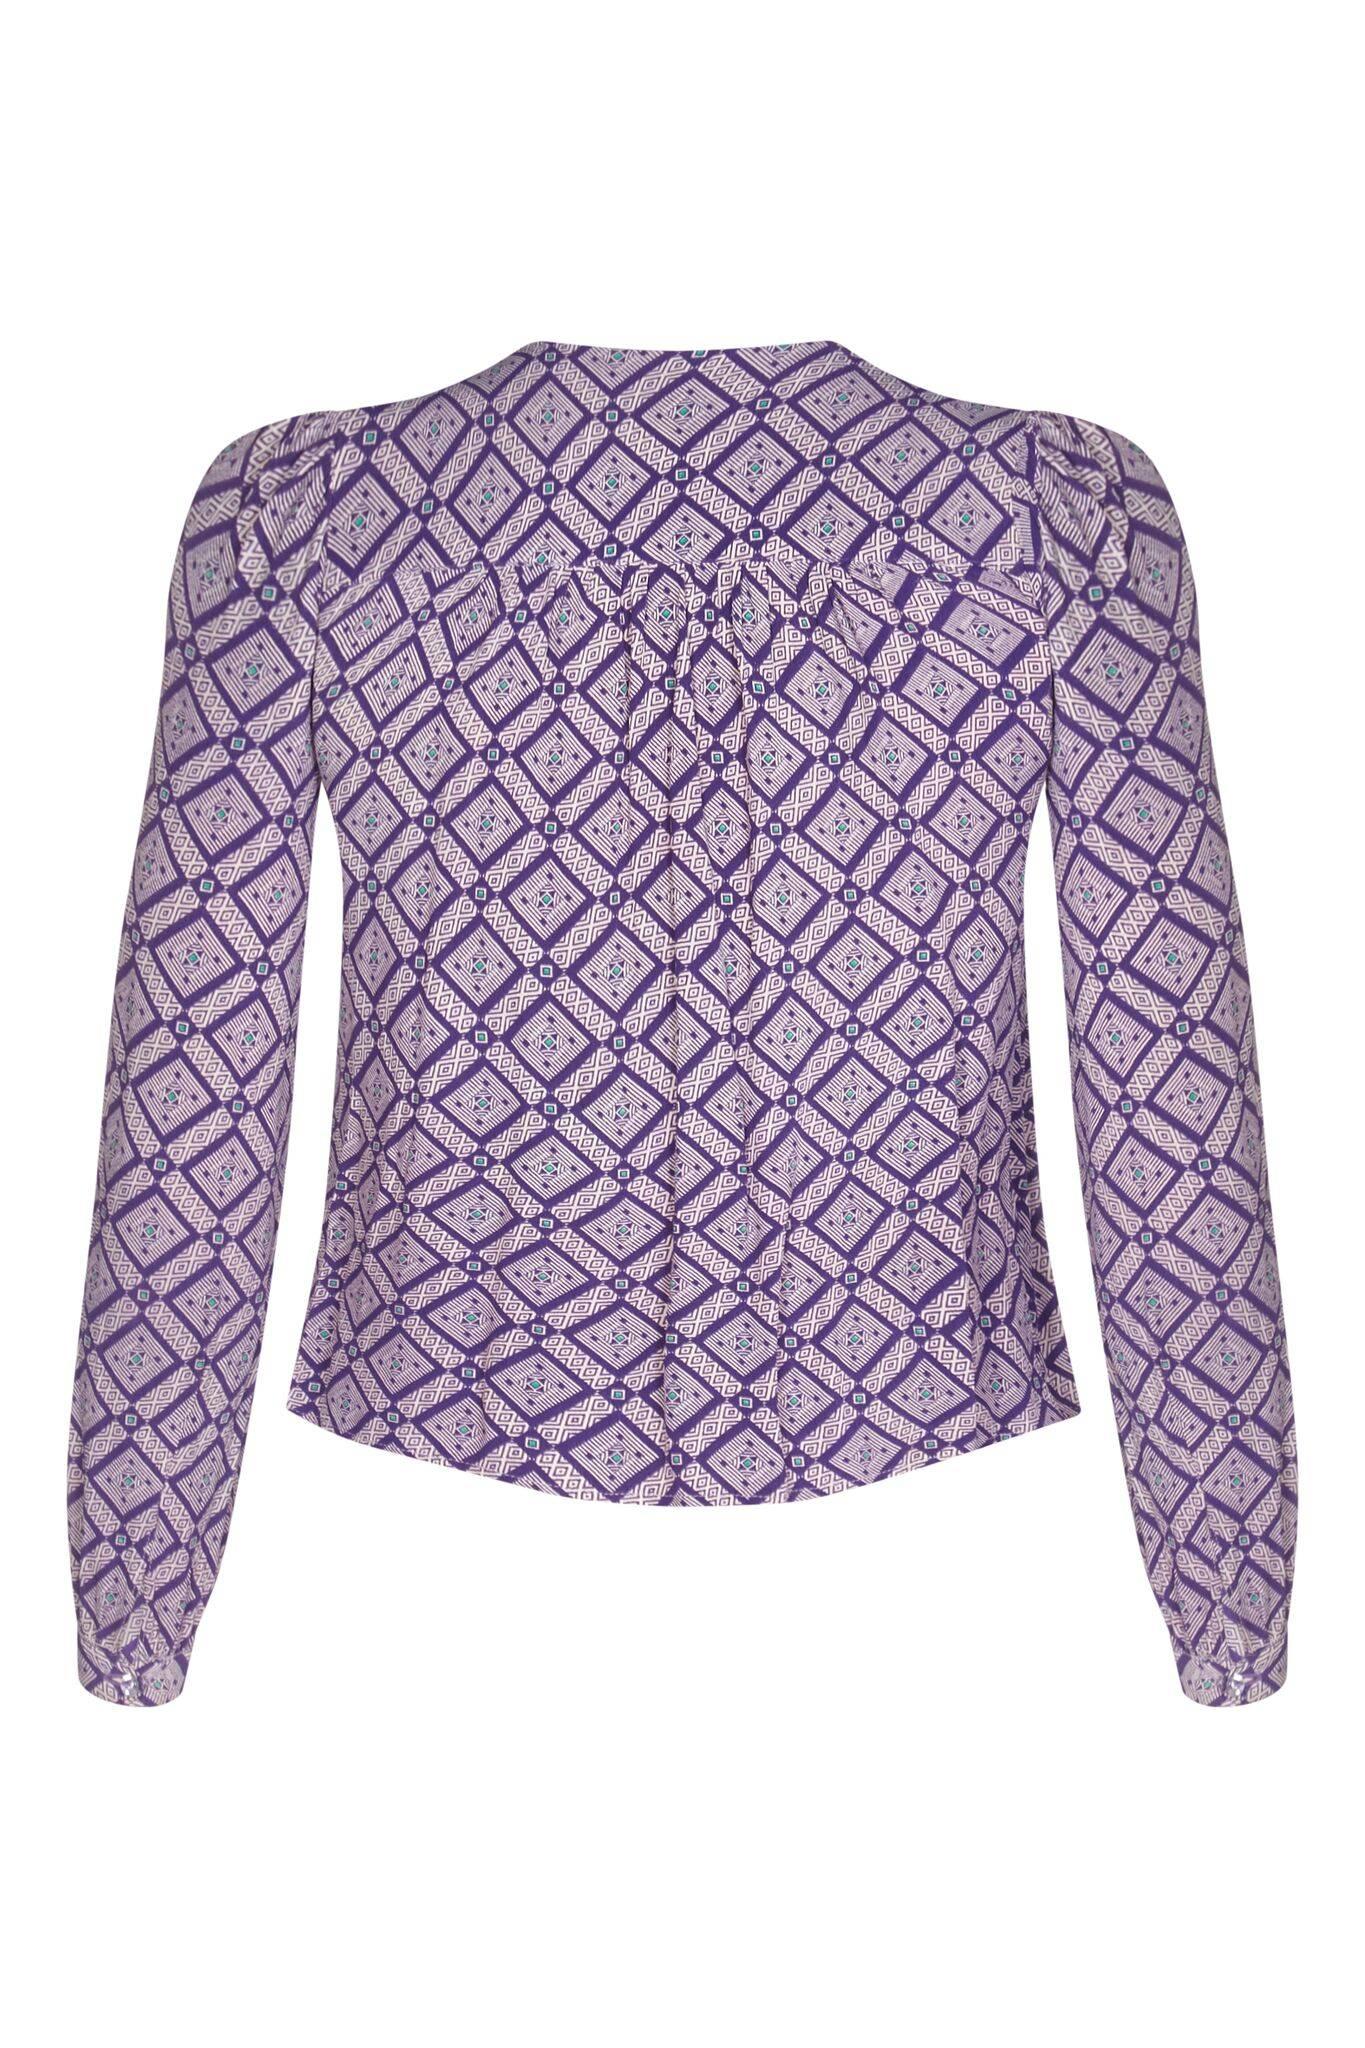 Cette énigmatique blouse géométrique violette des années 1970 avec col à nœud de chatte est une pièce du célèbre designer britannique Jeff Banks, dans le cadre de sa marque de boutiques à succès des années 1960 et 1970, Clobber. Cette pièce en